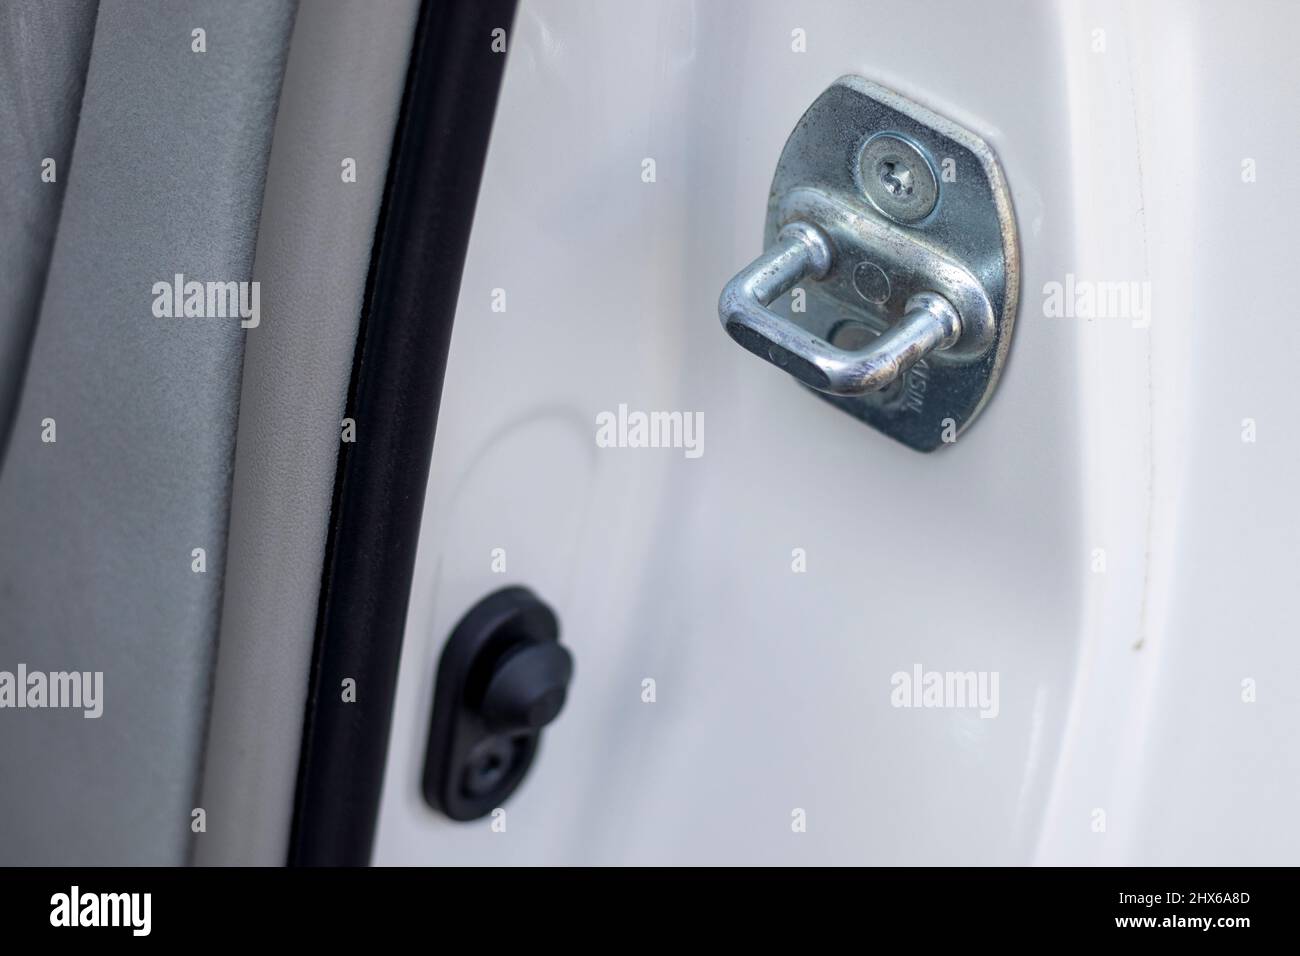 Car door striker plate hook Stock Photo